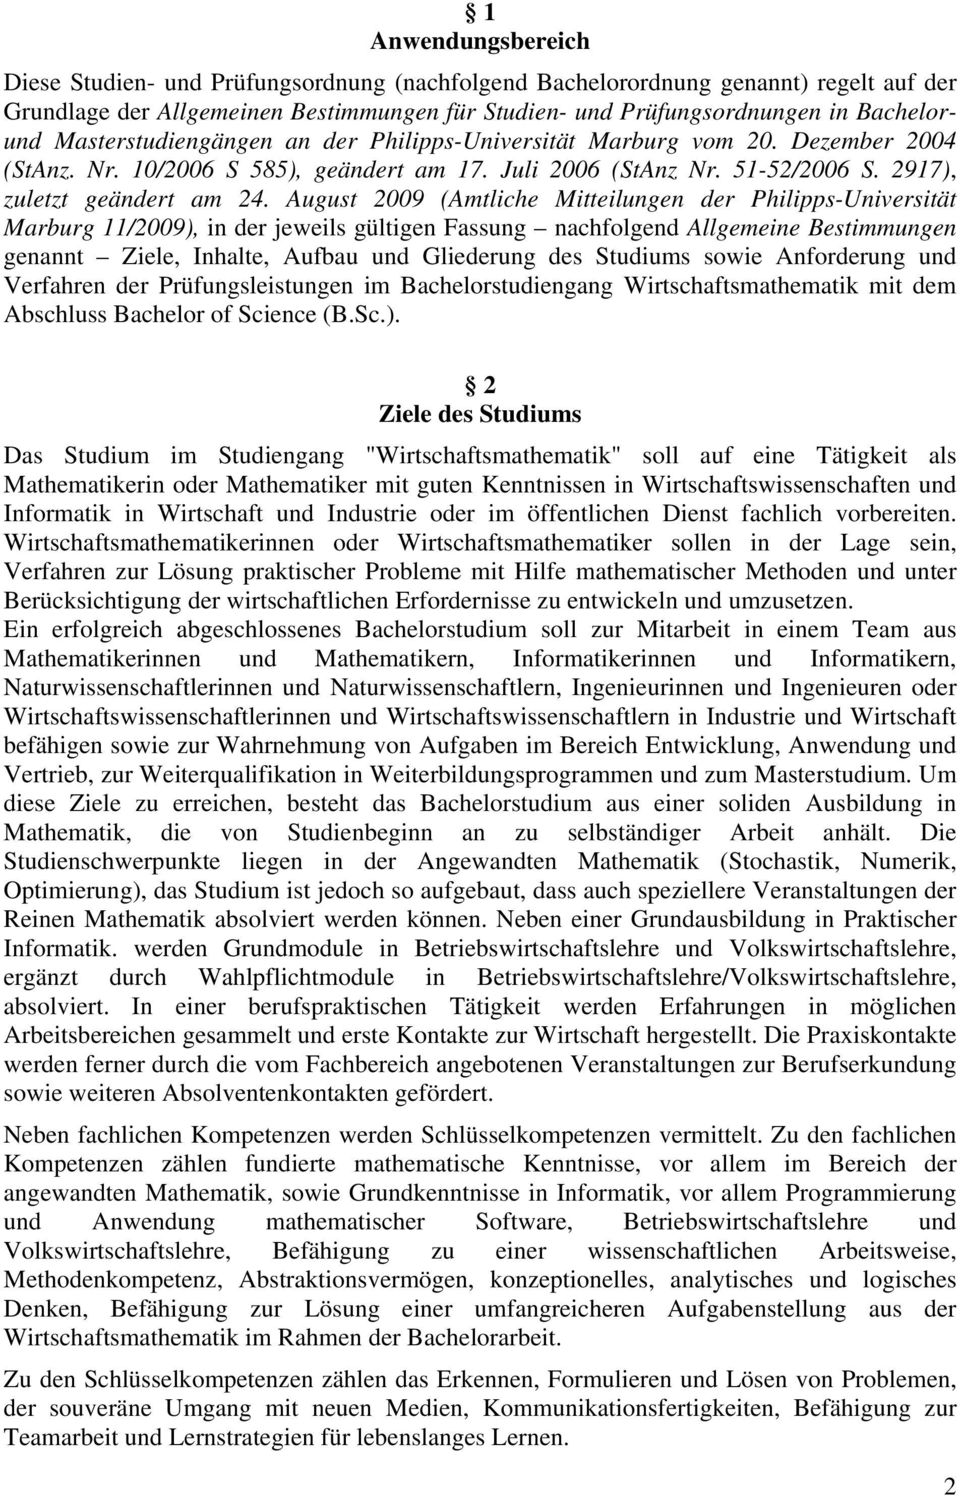 August 2009 (Amtliche Mitteilungen der Philipps-Universität Marburg 11/2009), in der jeweils gültigen Fassung nachfolgend Allgemeine Bestimmungen genannt Ziele, e, Aufbau und Gliederung des Studiums